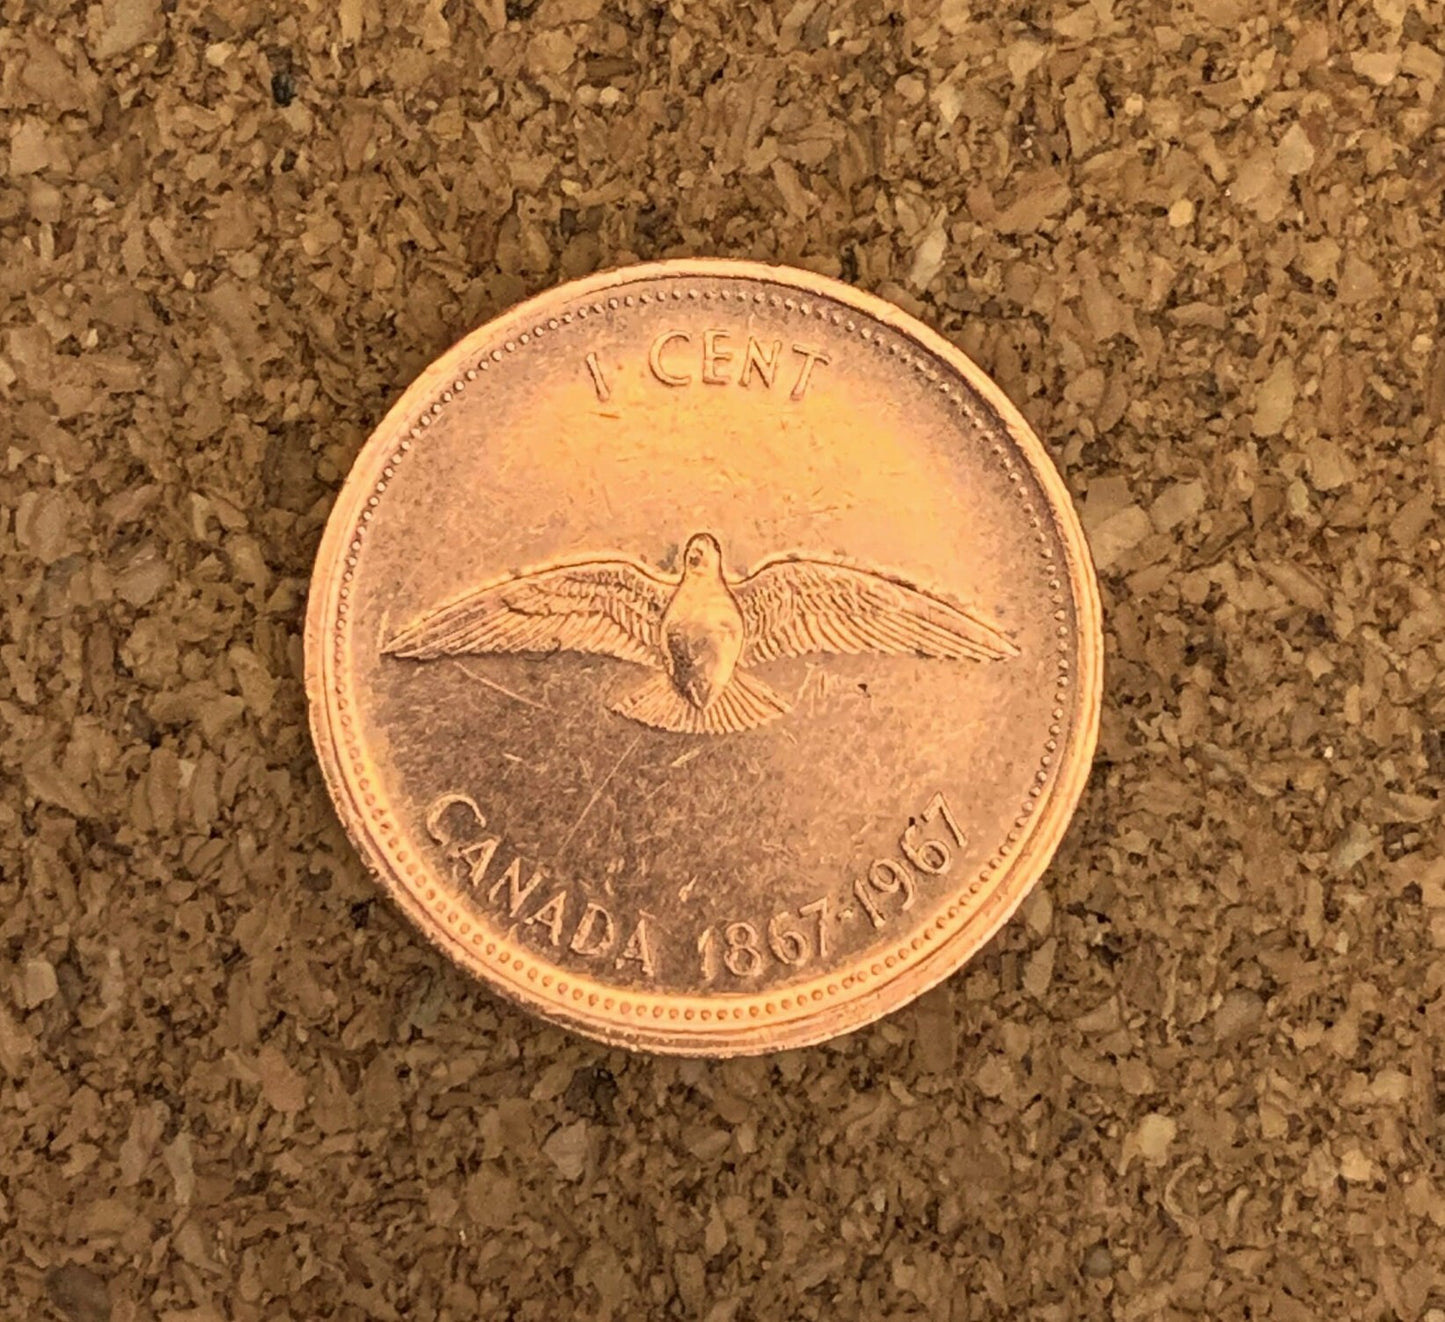 1967 Canadian Cent - Excellent Condition - Commemorative Cent